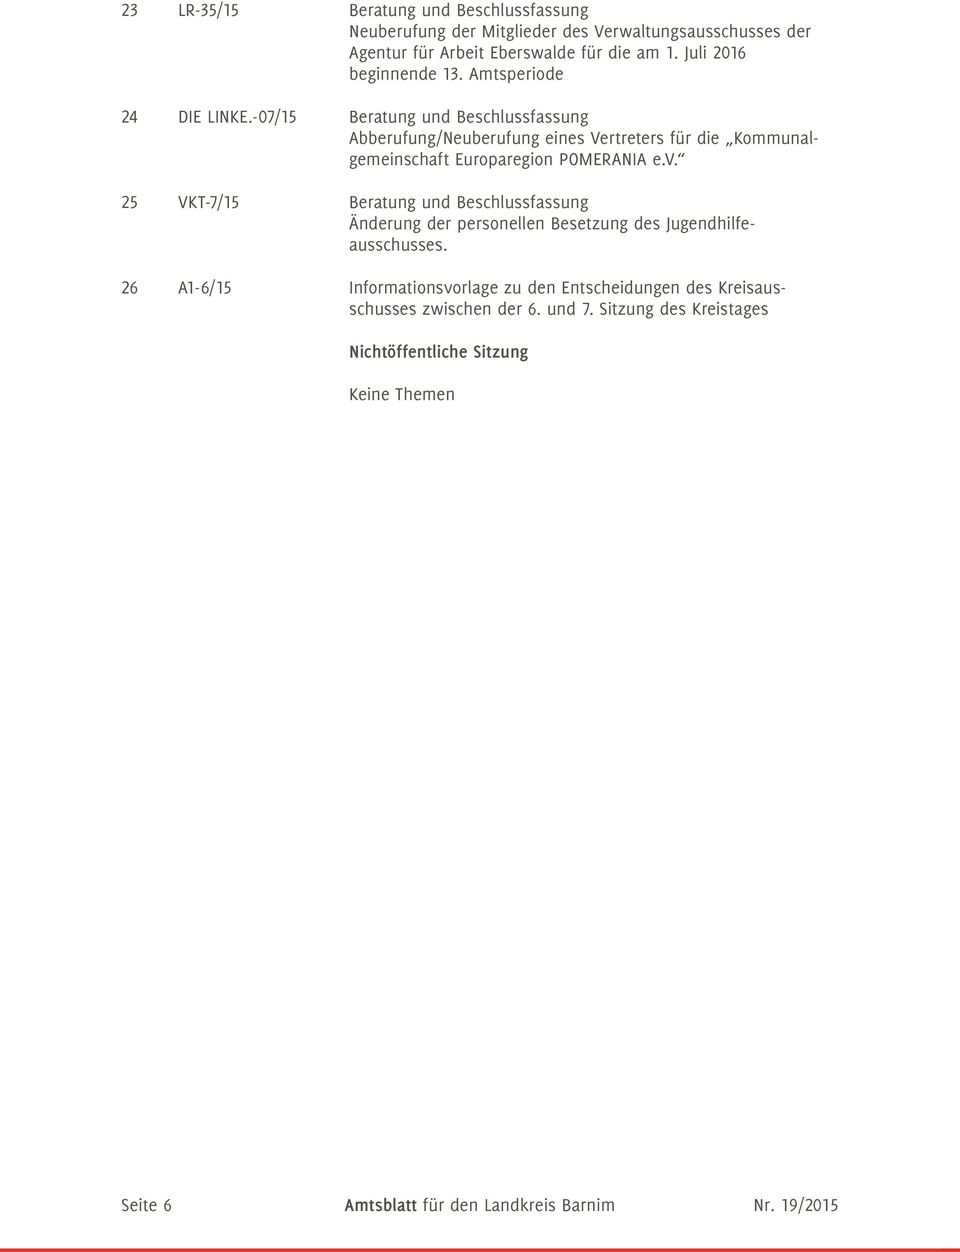 -07/15 Beratung und Beschlussfassung Abberufung/Neuberufung eines Vertreters für die Kommunalgemeinschaft Europaregion POMERANIA e.v.